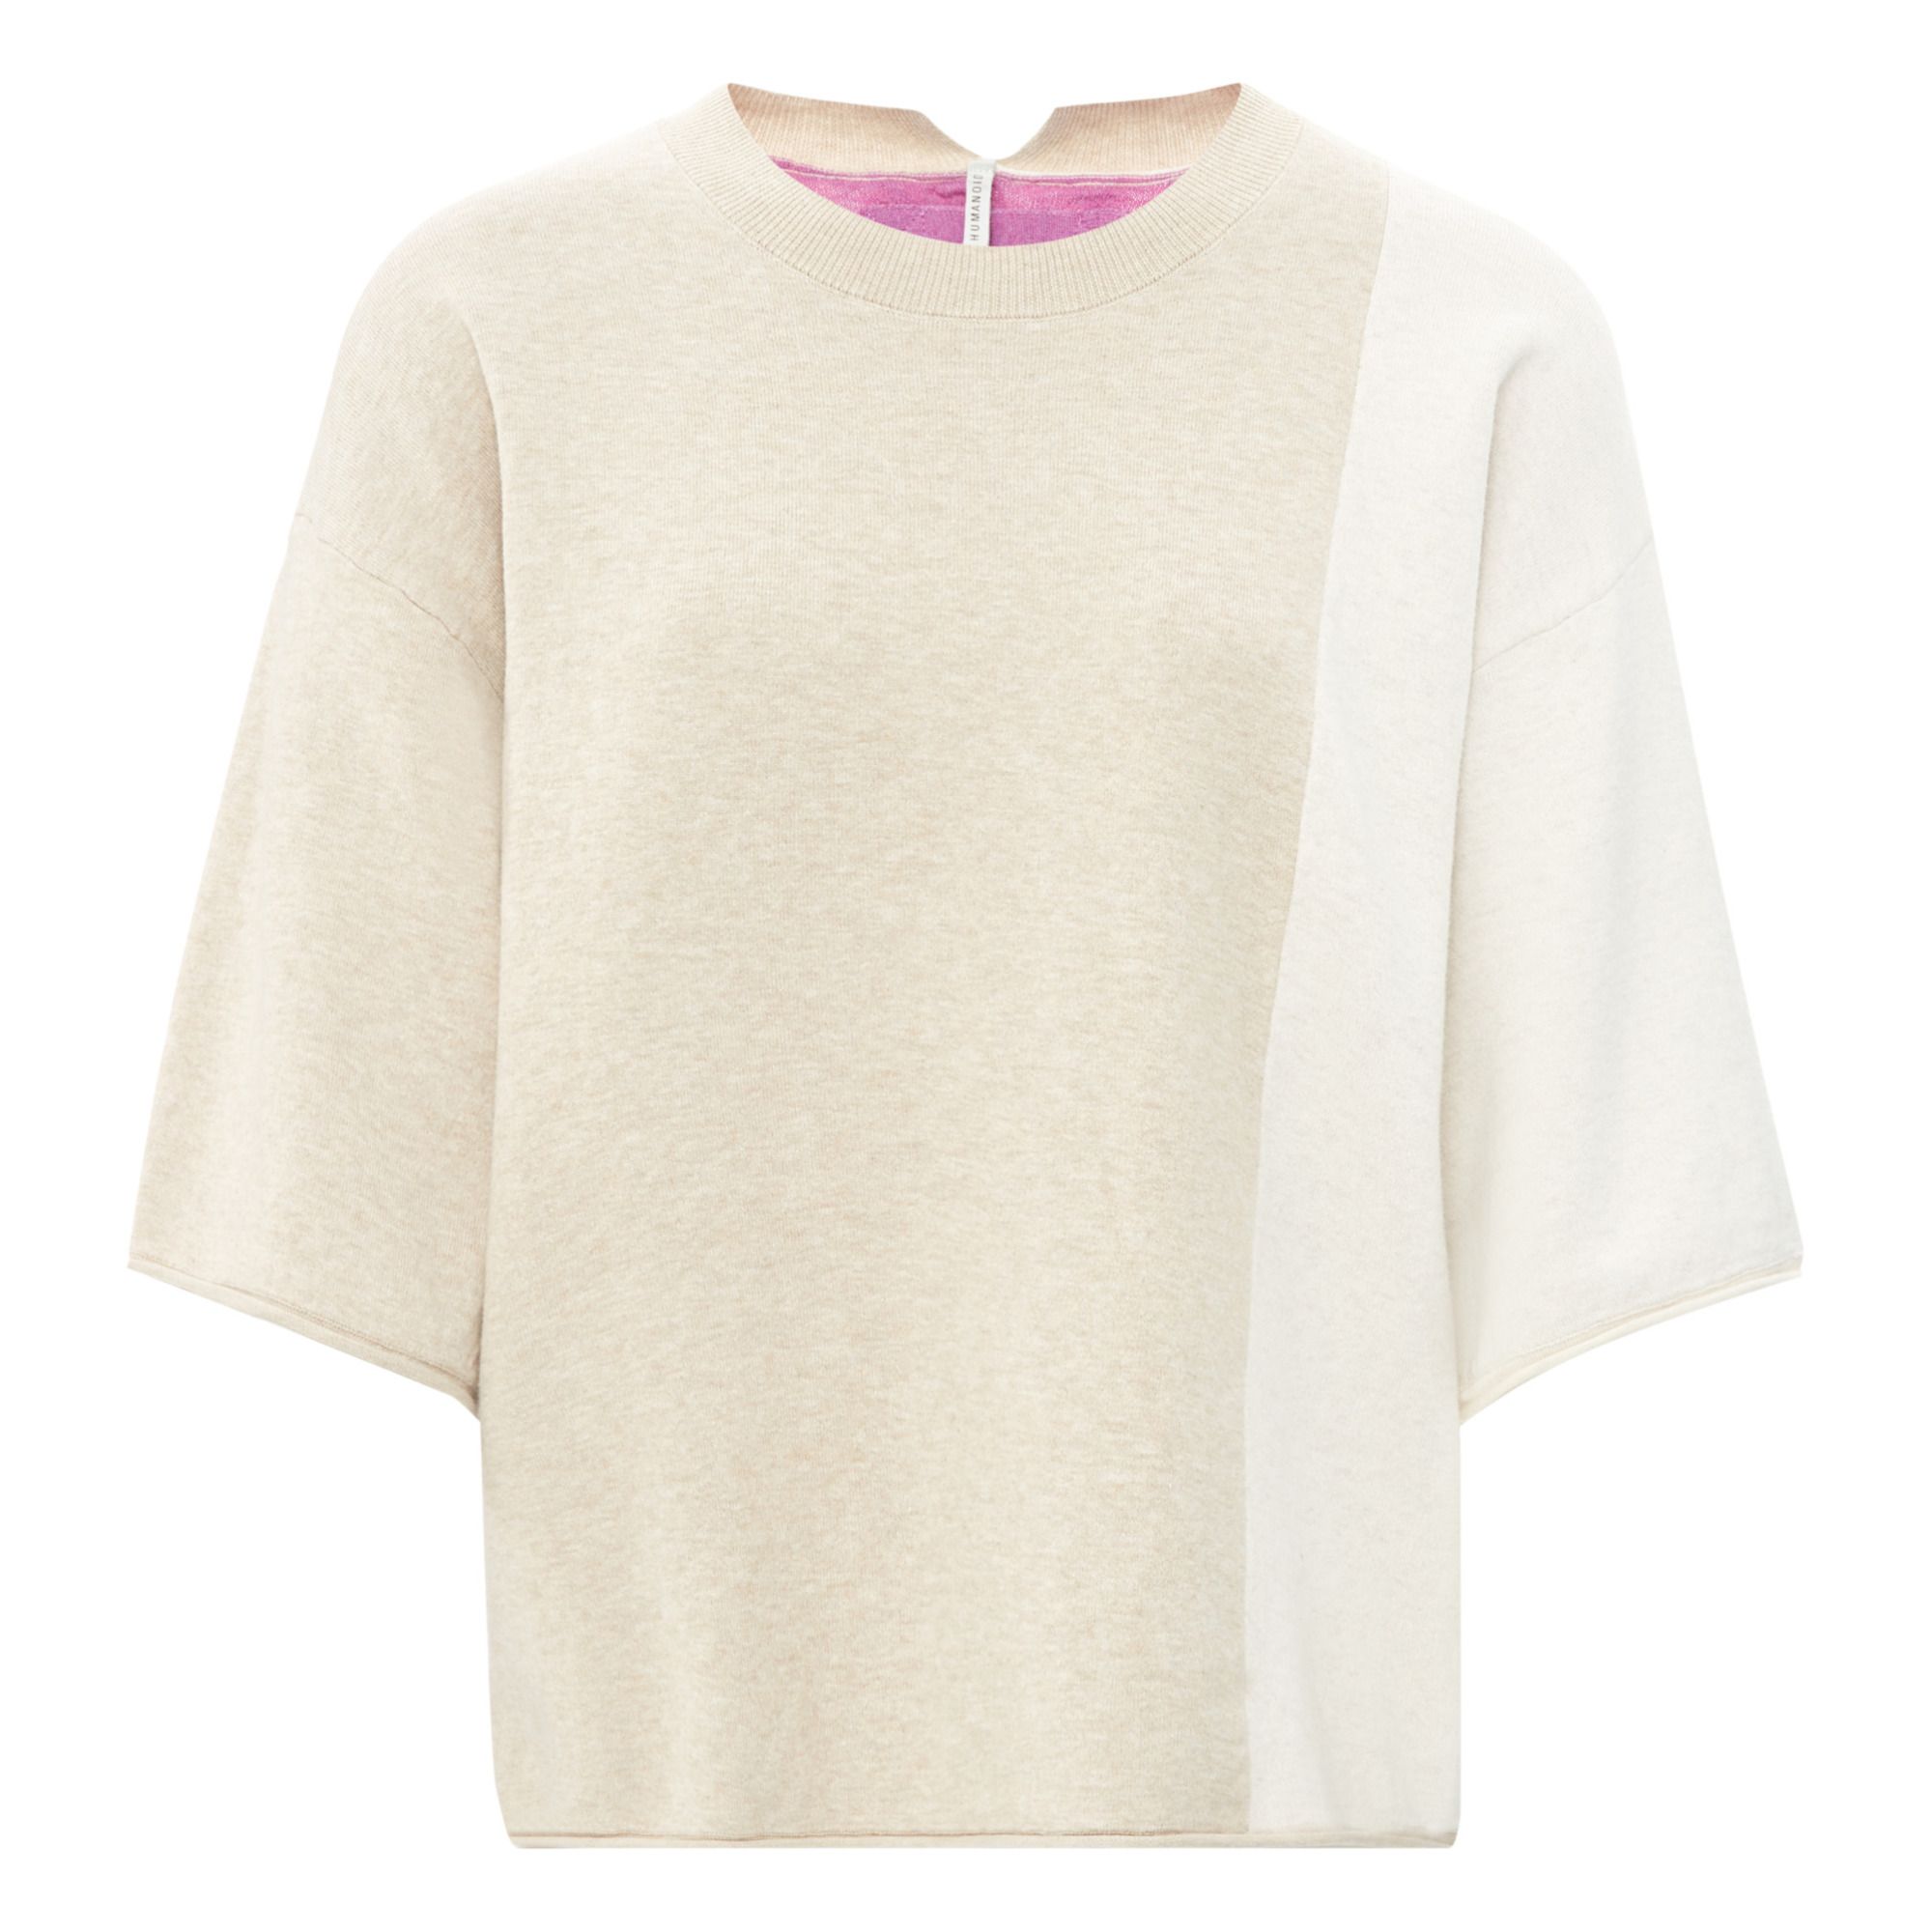 Humanoid - T-shirt Sartin Colorblock Coton Bio - Femme - Sable